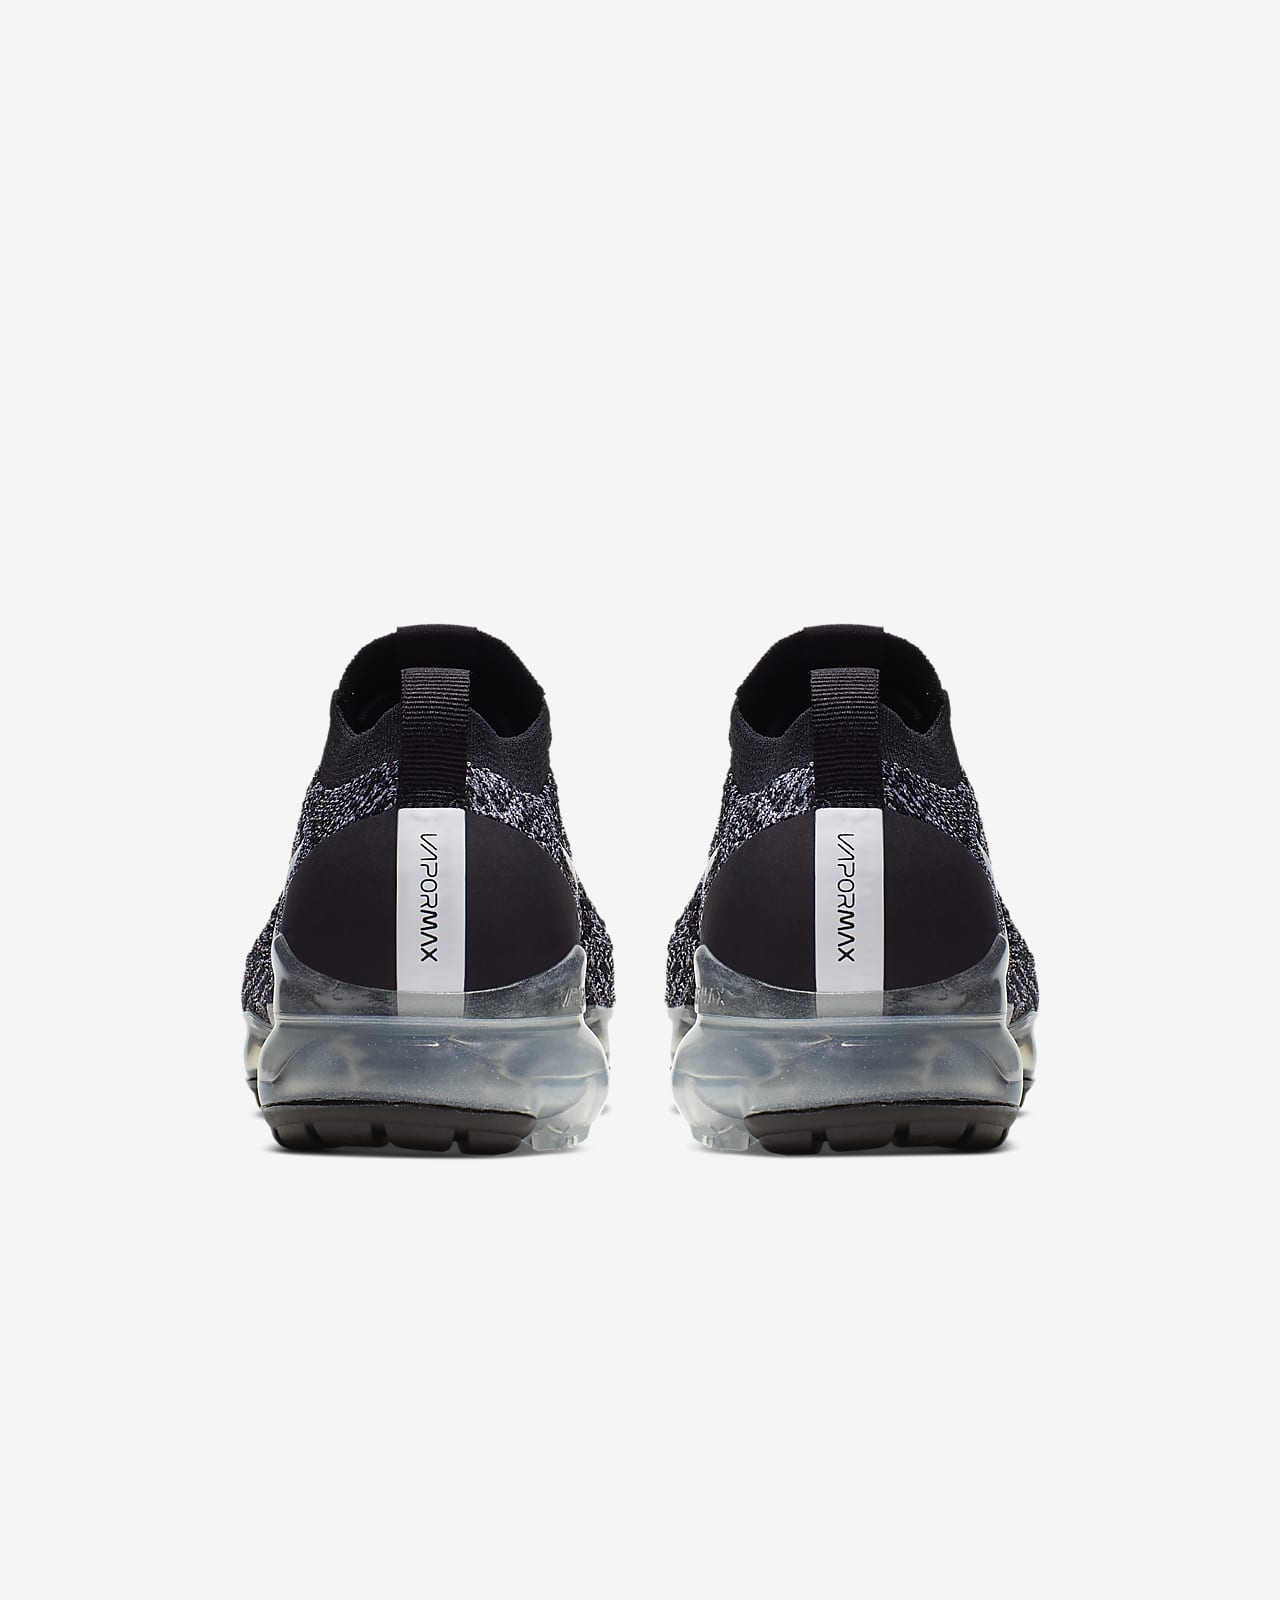 women's 'air vapormax flyknit running shoes black